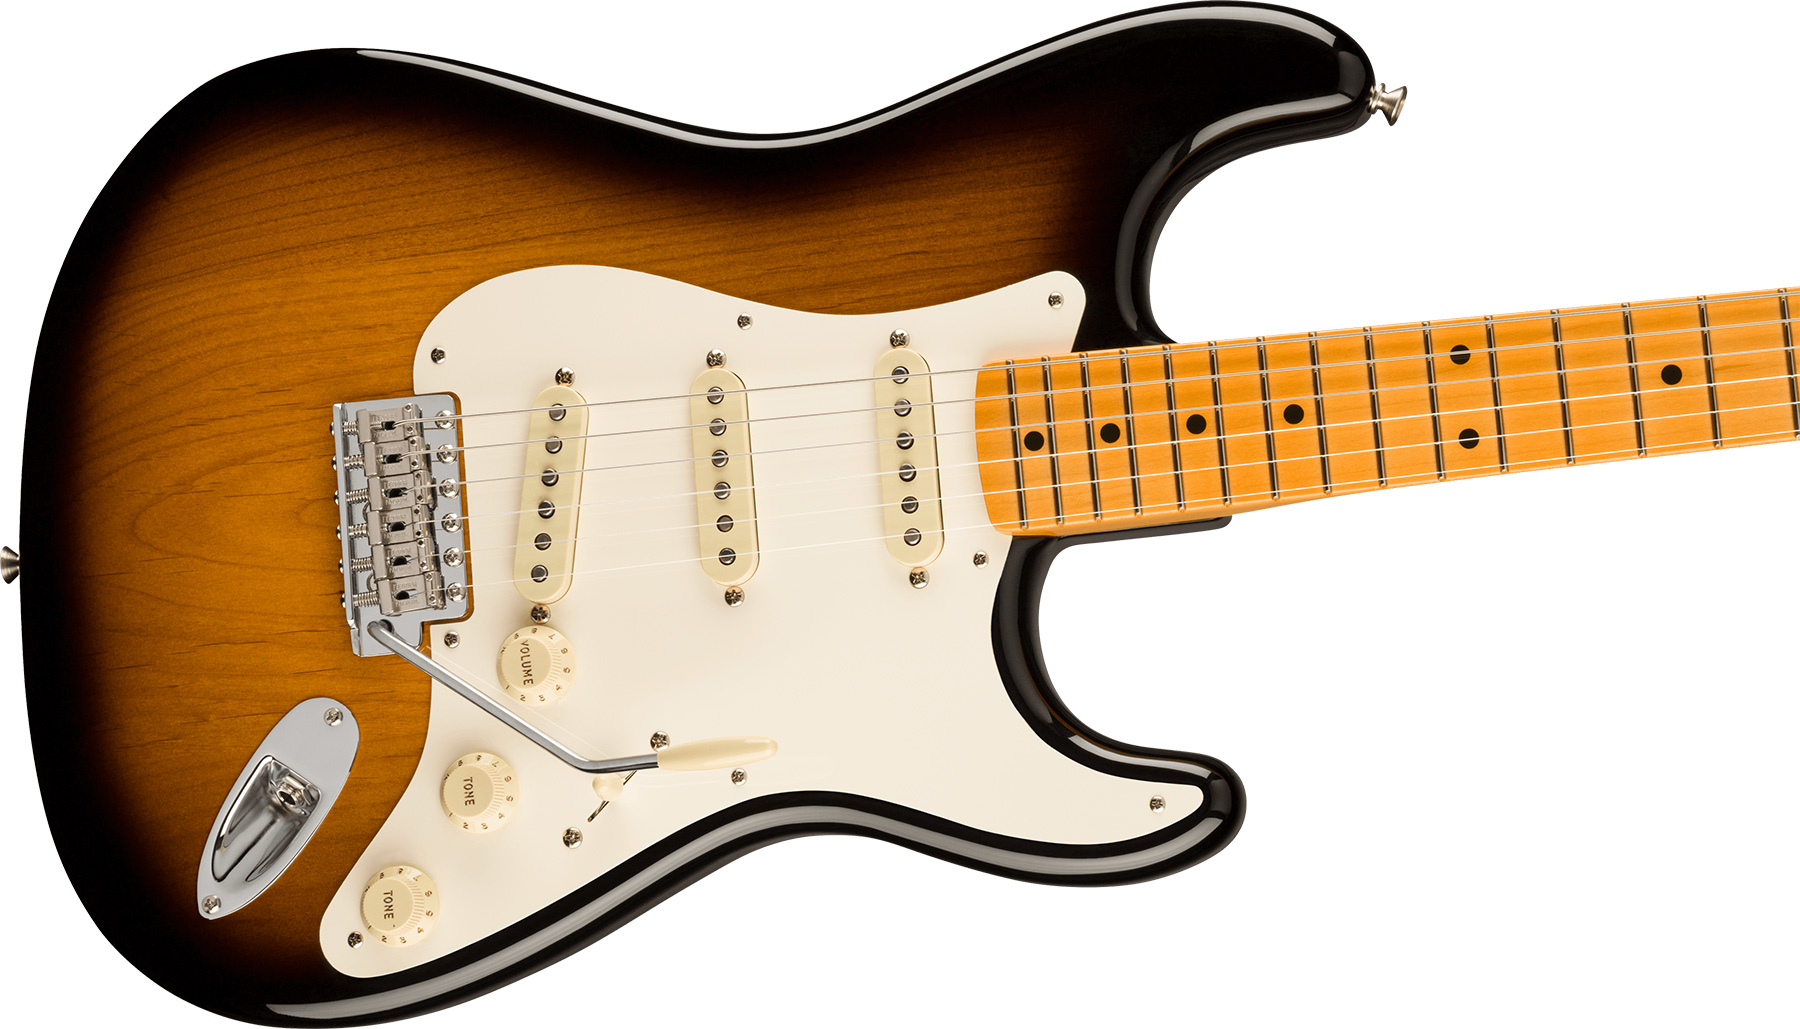 Fender Strat 1957 American Vintage Ii Usa 3s Trem Mn - 2-color Sunburst - Guitarra eléctrica con forma de str. - Variation 2